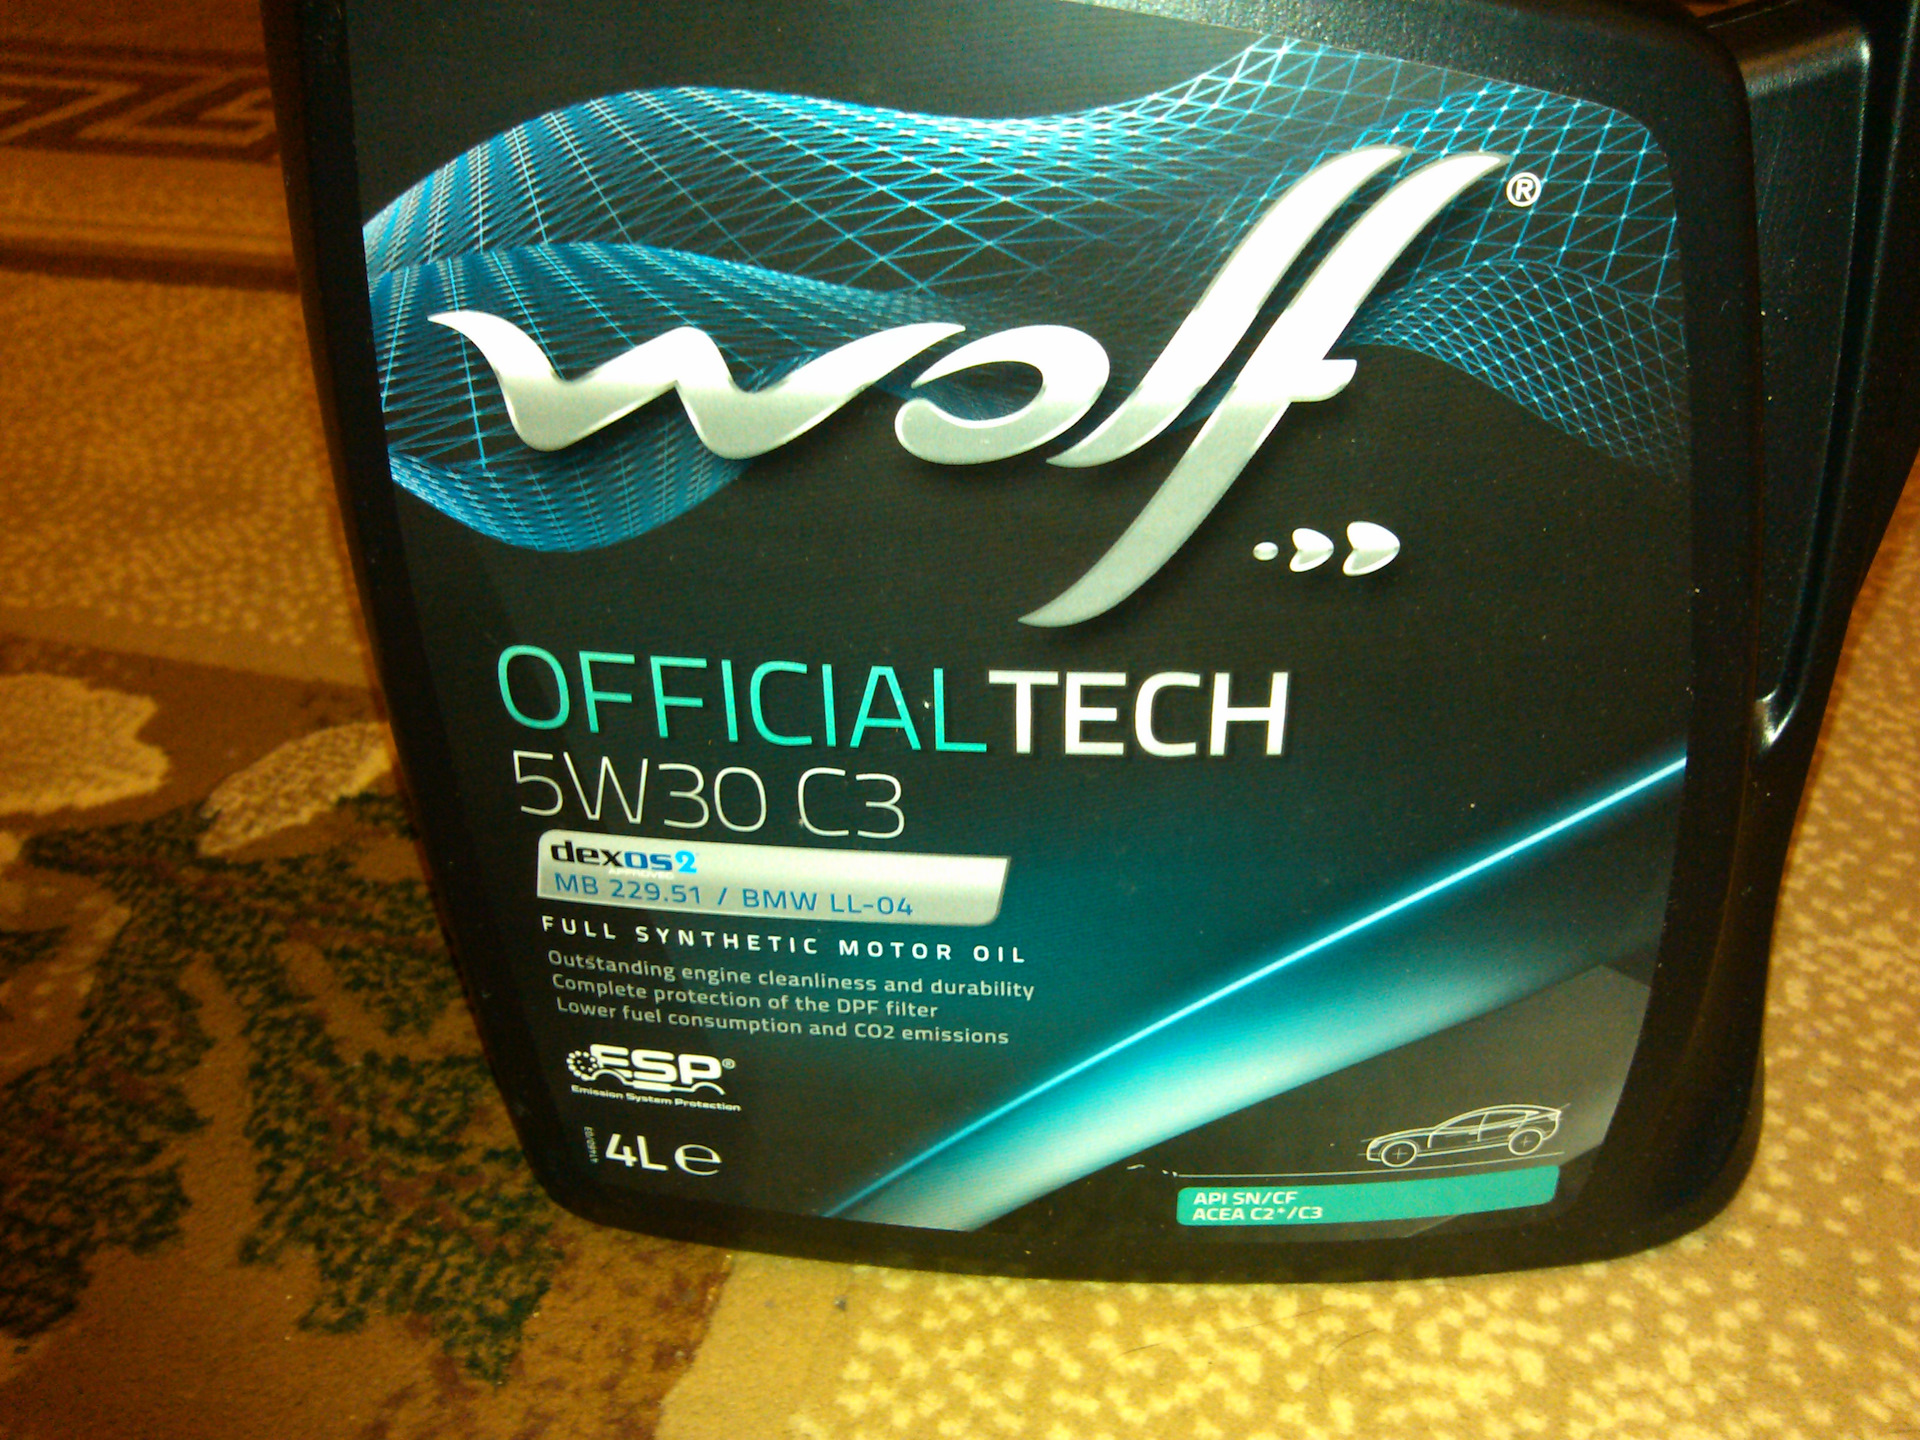 Купить масло вольт. Wolf OFFICIALTECH 5w30 артикул 8308116. Wolf officialtech5w30 c2/c3. Масло Wolf 5w30 c3. Масло Wolf 5w30 OFFICIALTECH c3.